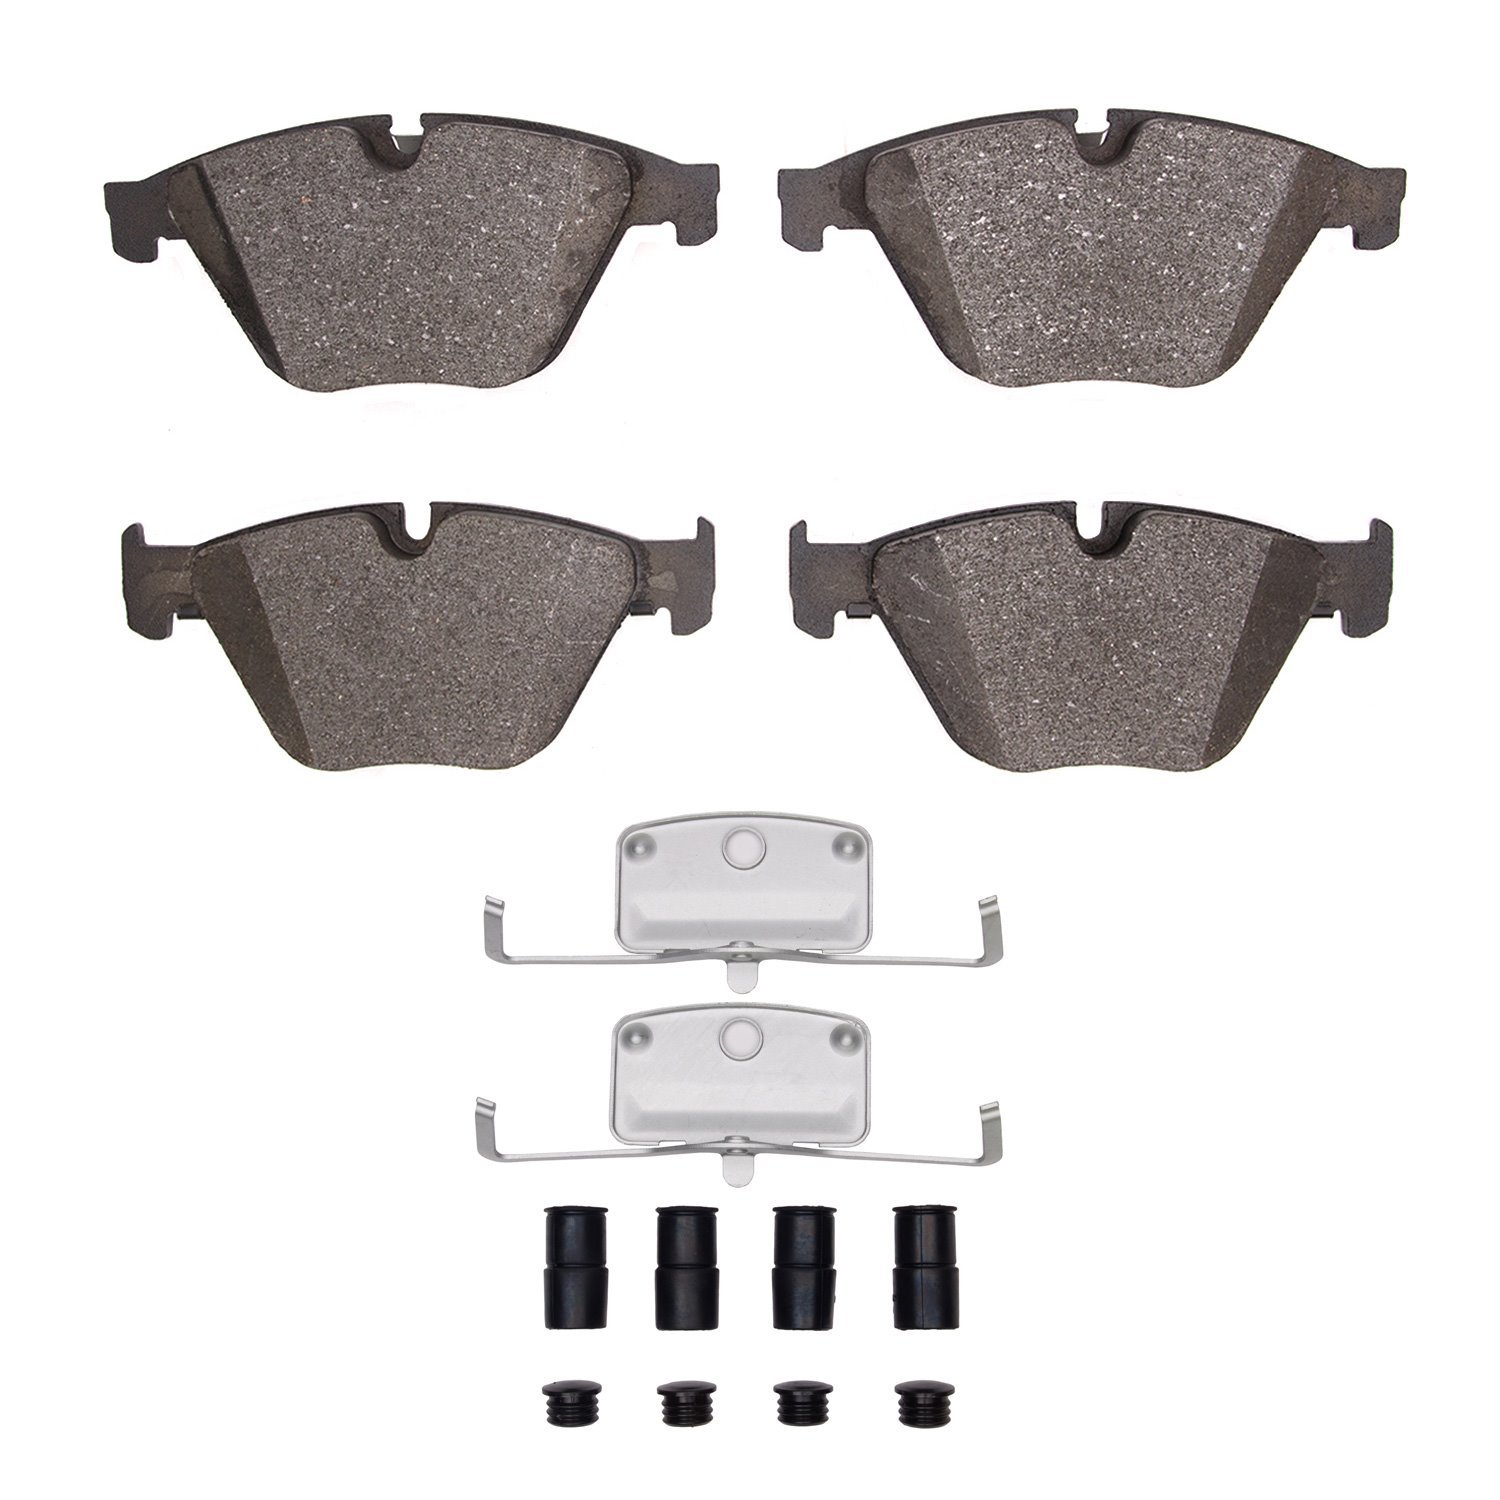 Semi-Metallic Brake Pads & Hardware Kit, 2011-2019 BMW, Position: Front